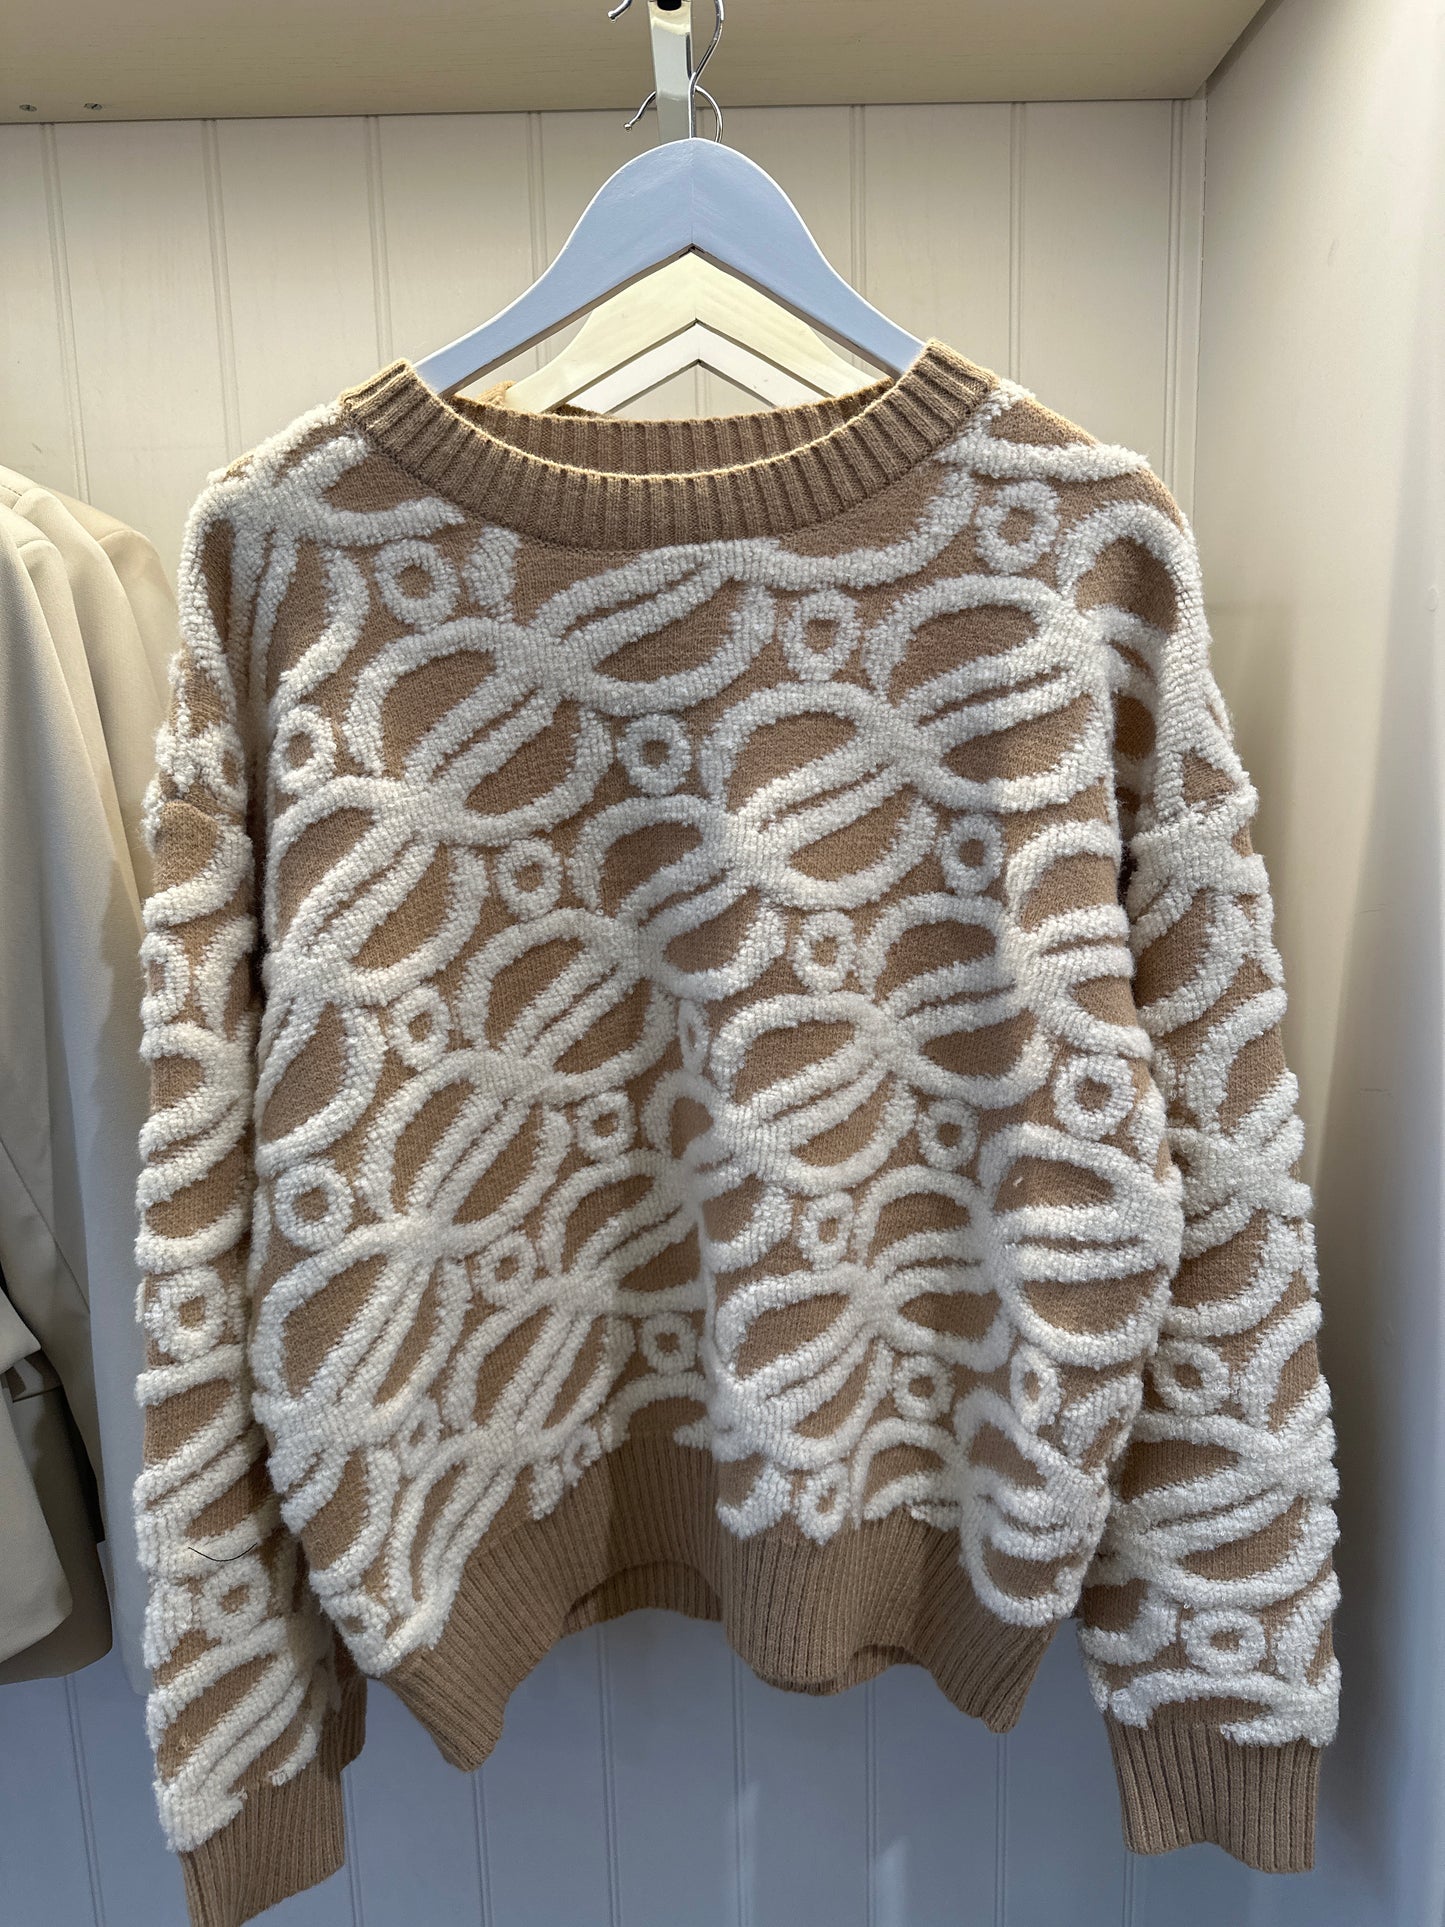 Cream & Tan swirl knit jumper